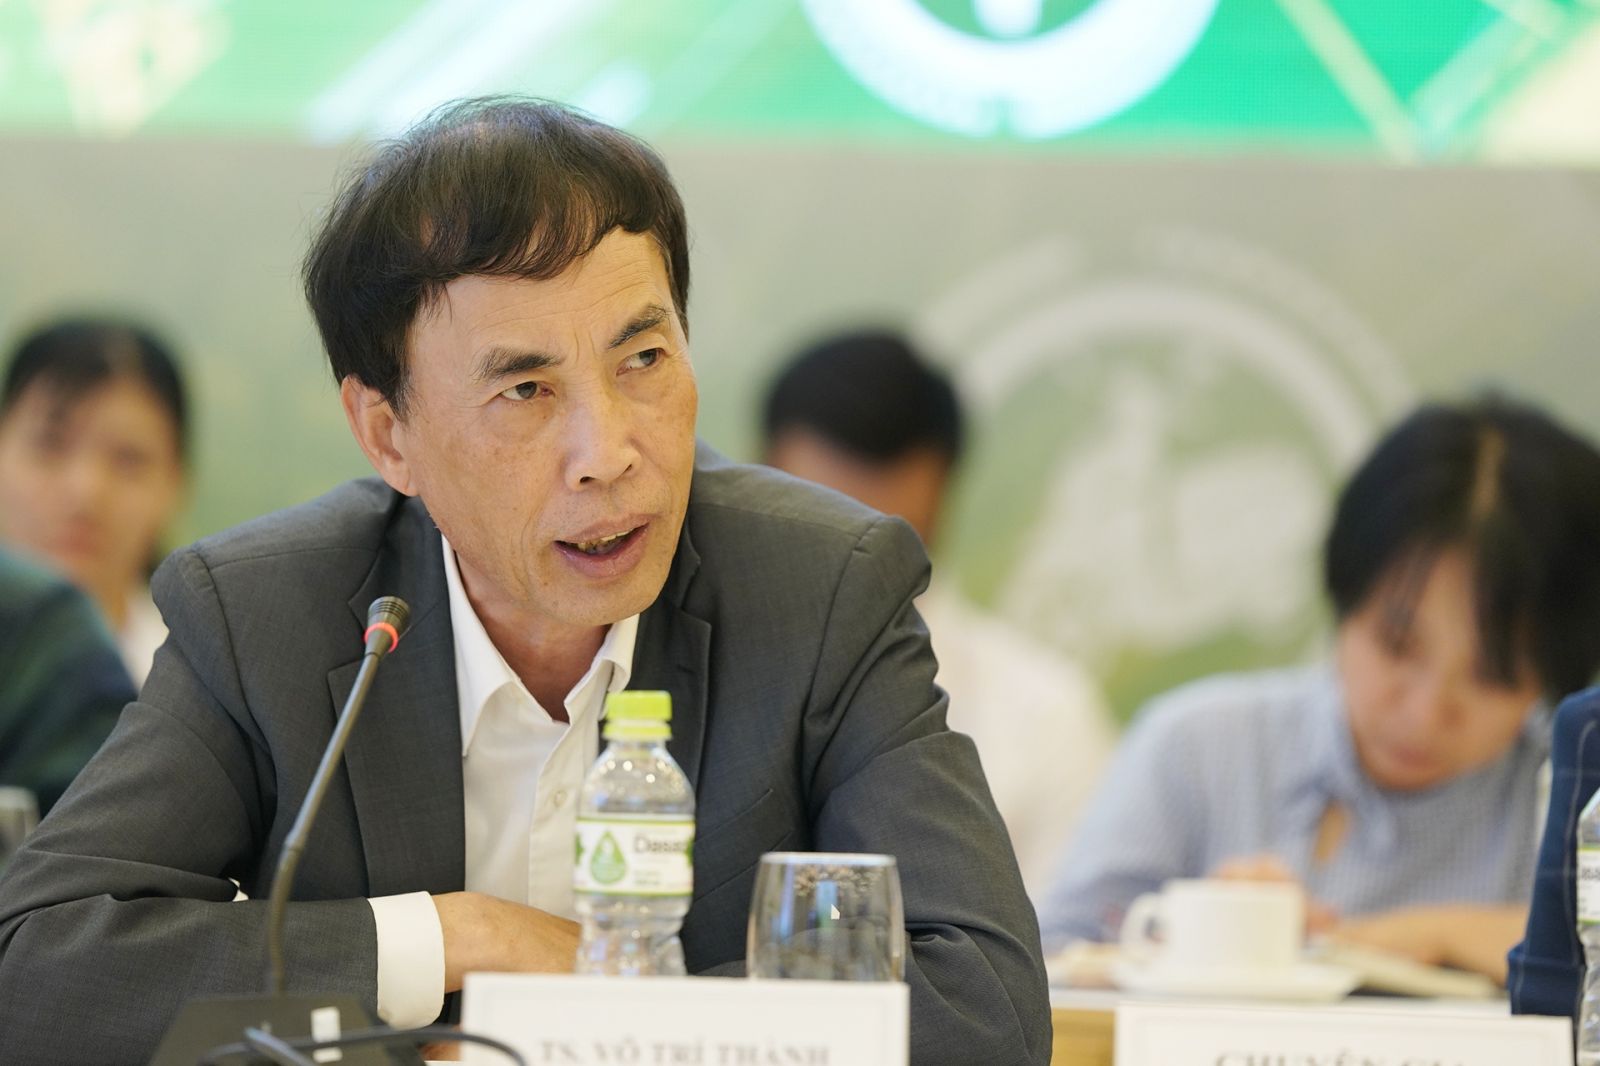 TS. Võ Trí Thành, chuyên gia kinh tế, nguyên Phó Viện trưởng Viện Nghiên cứu Quản lý Kinh tế Trung ương phát biểu tại hội thảo.